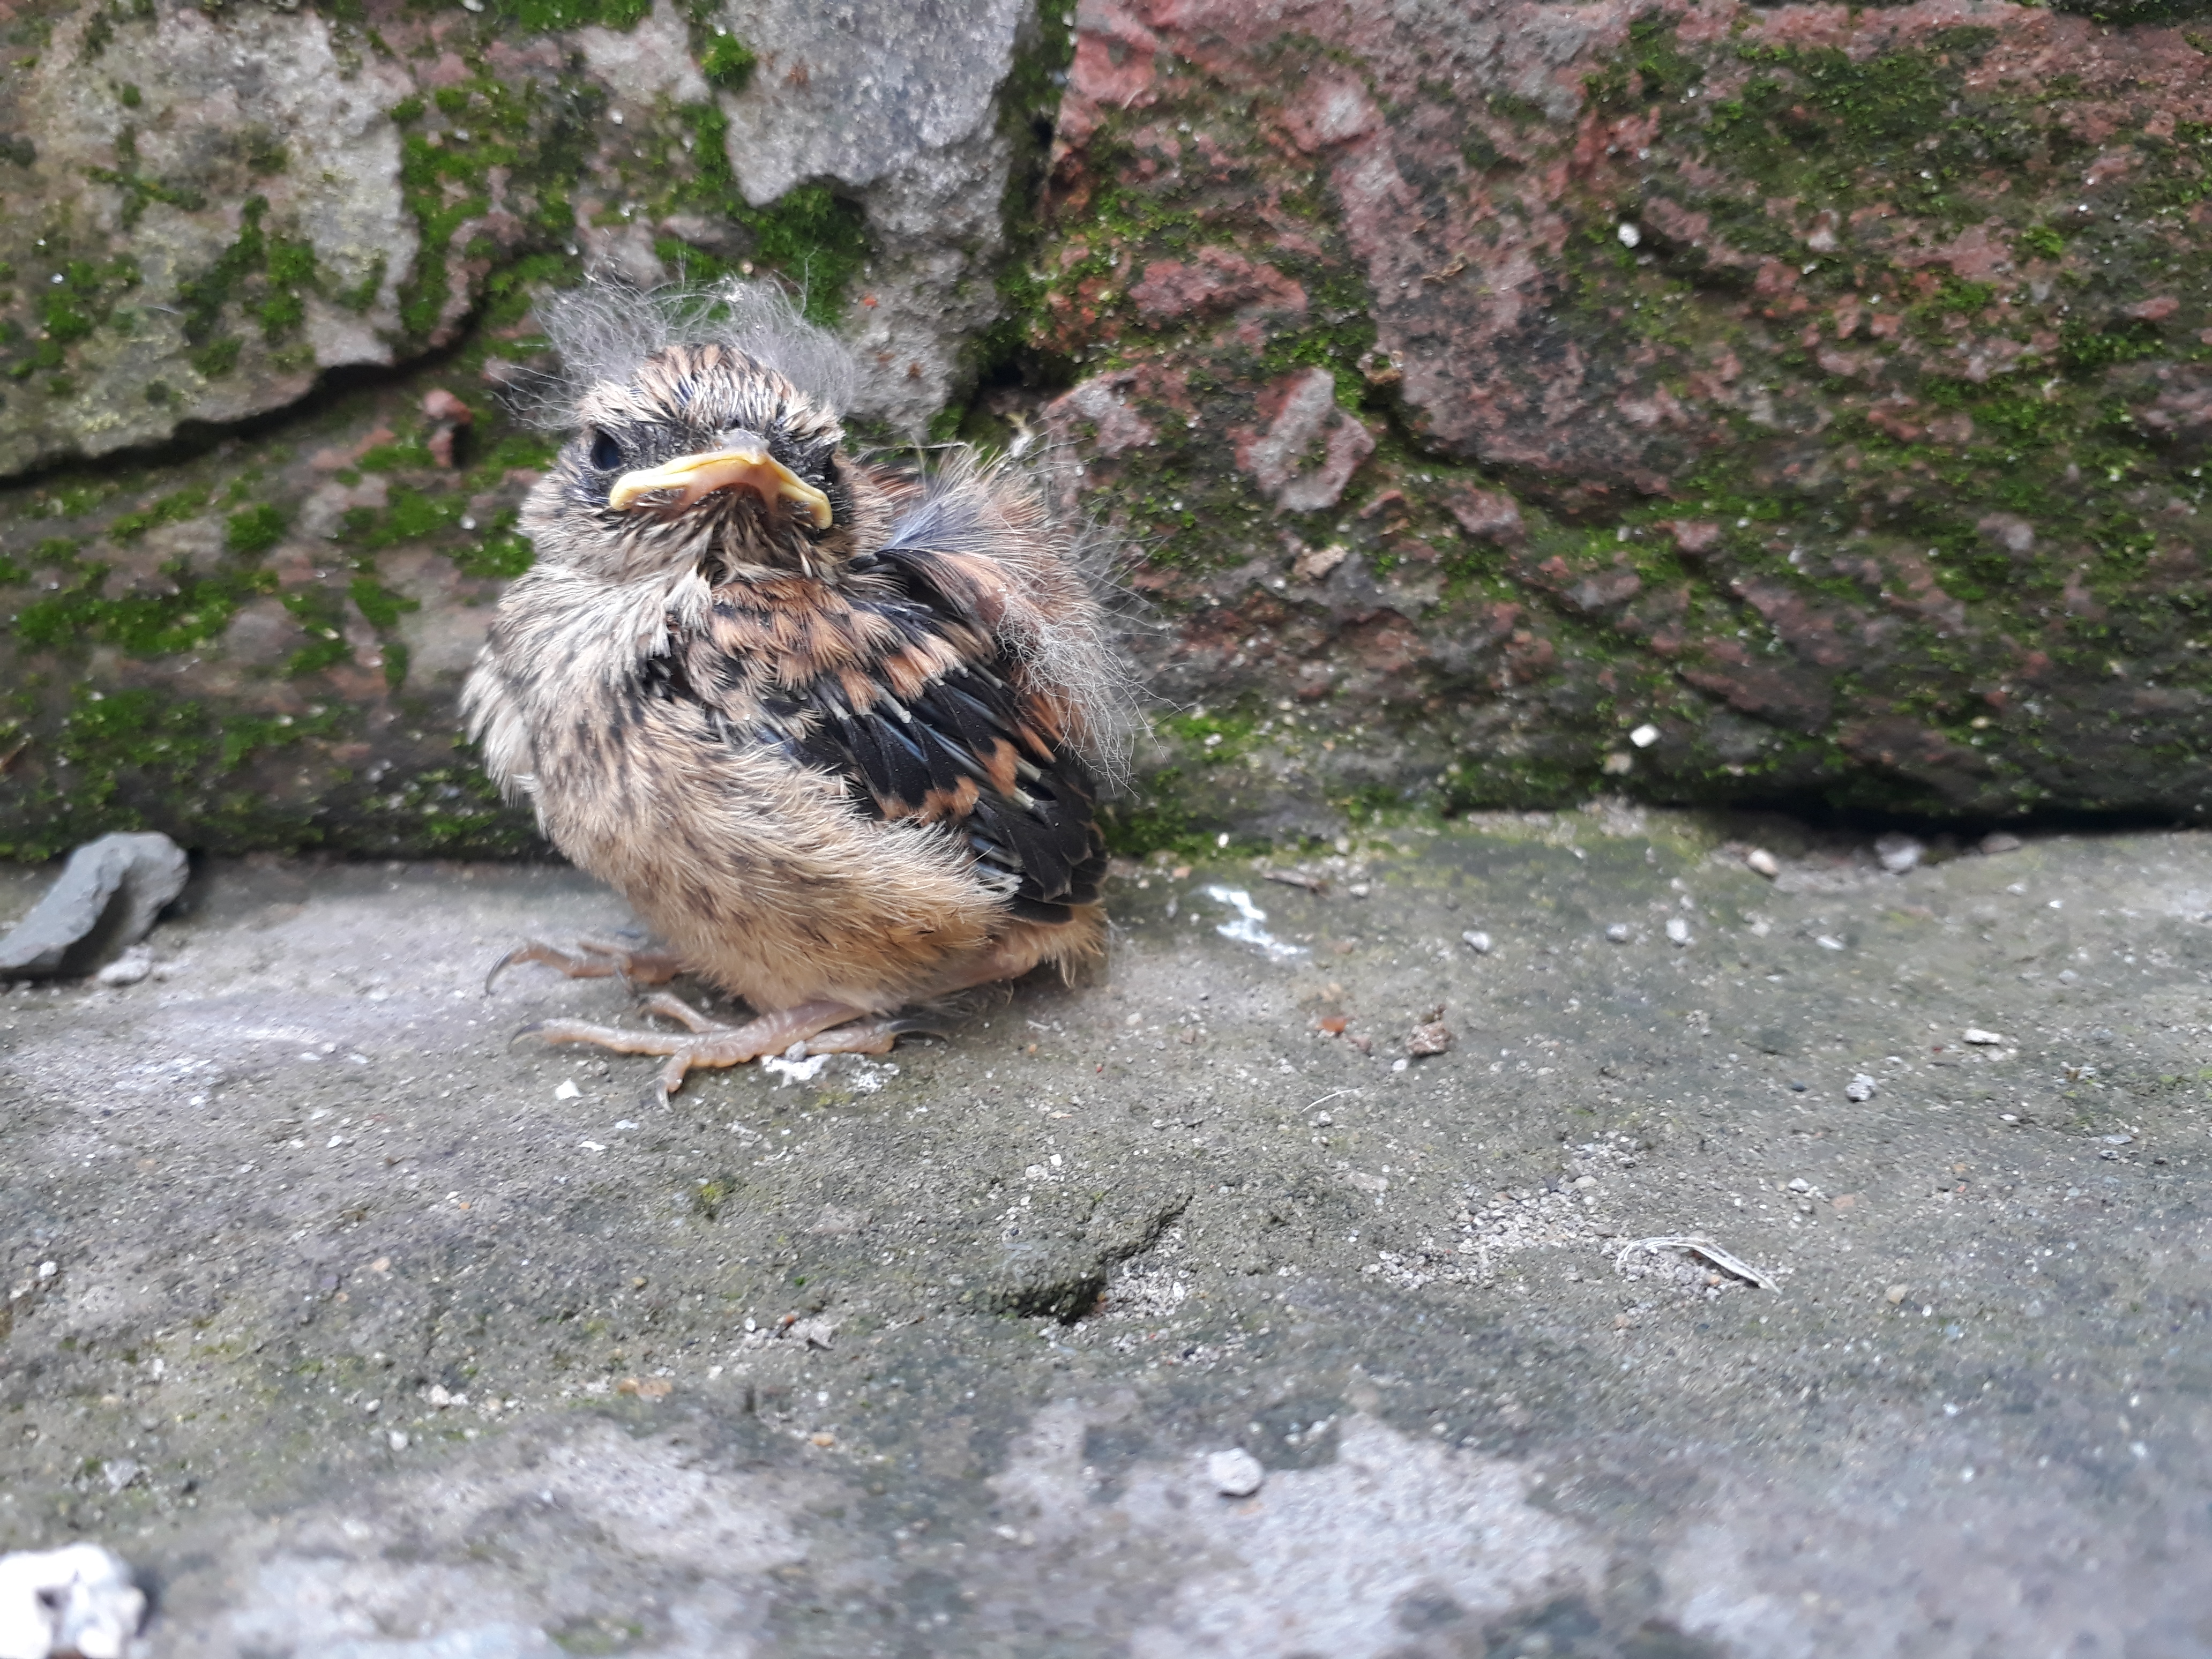 House sparrow just born